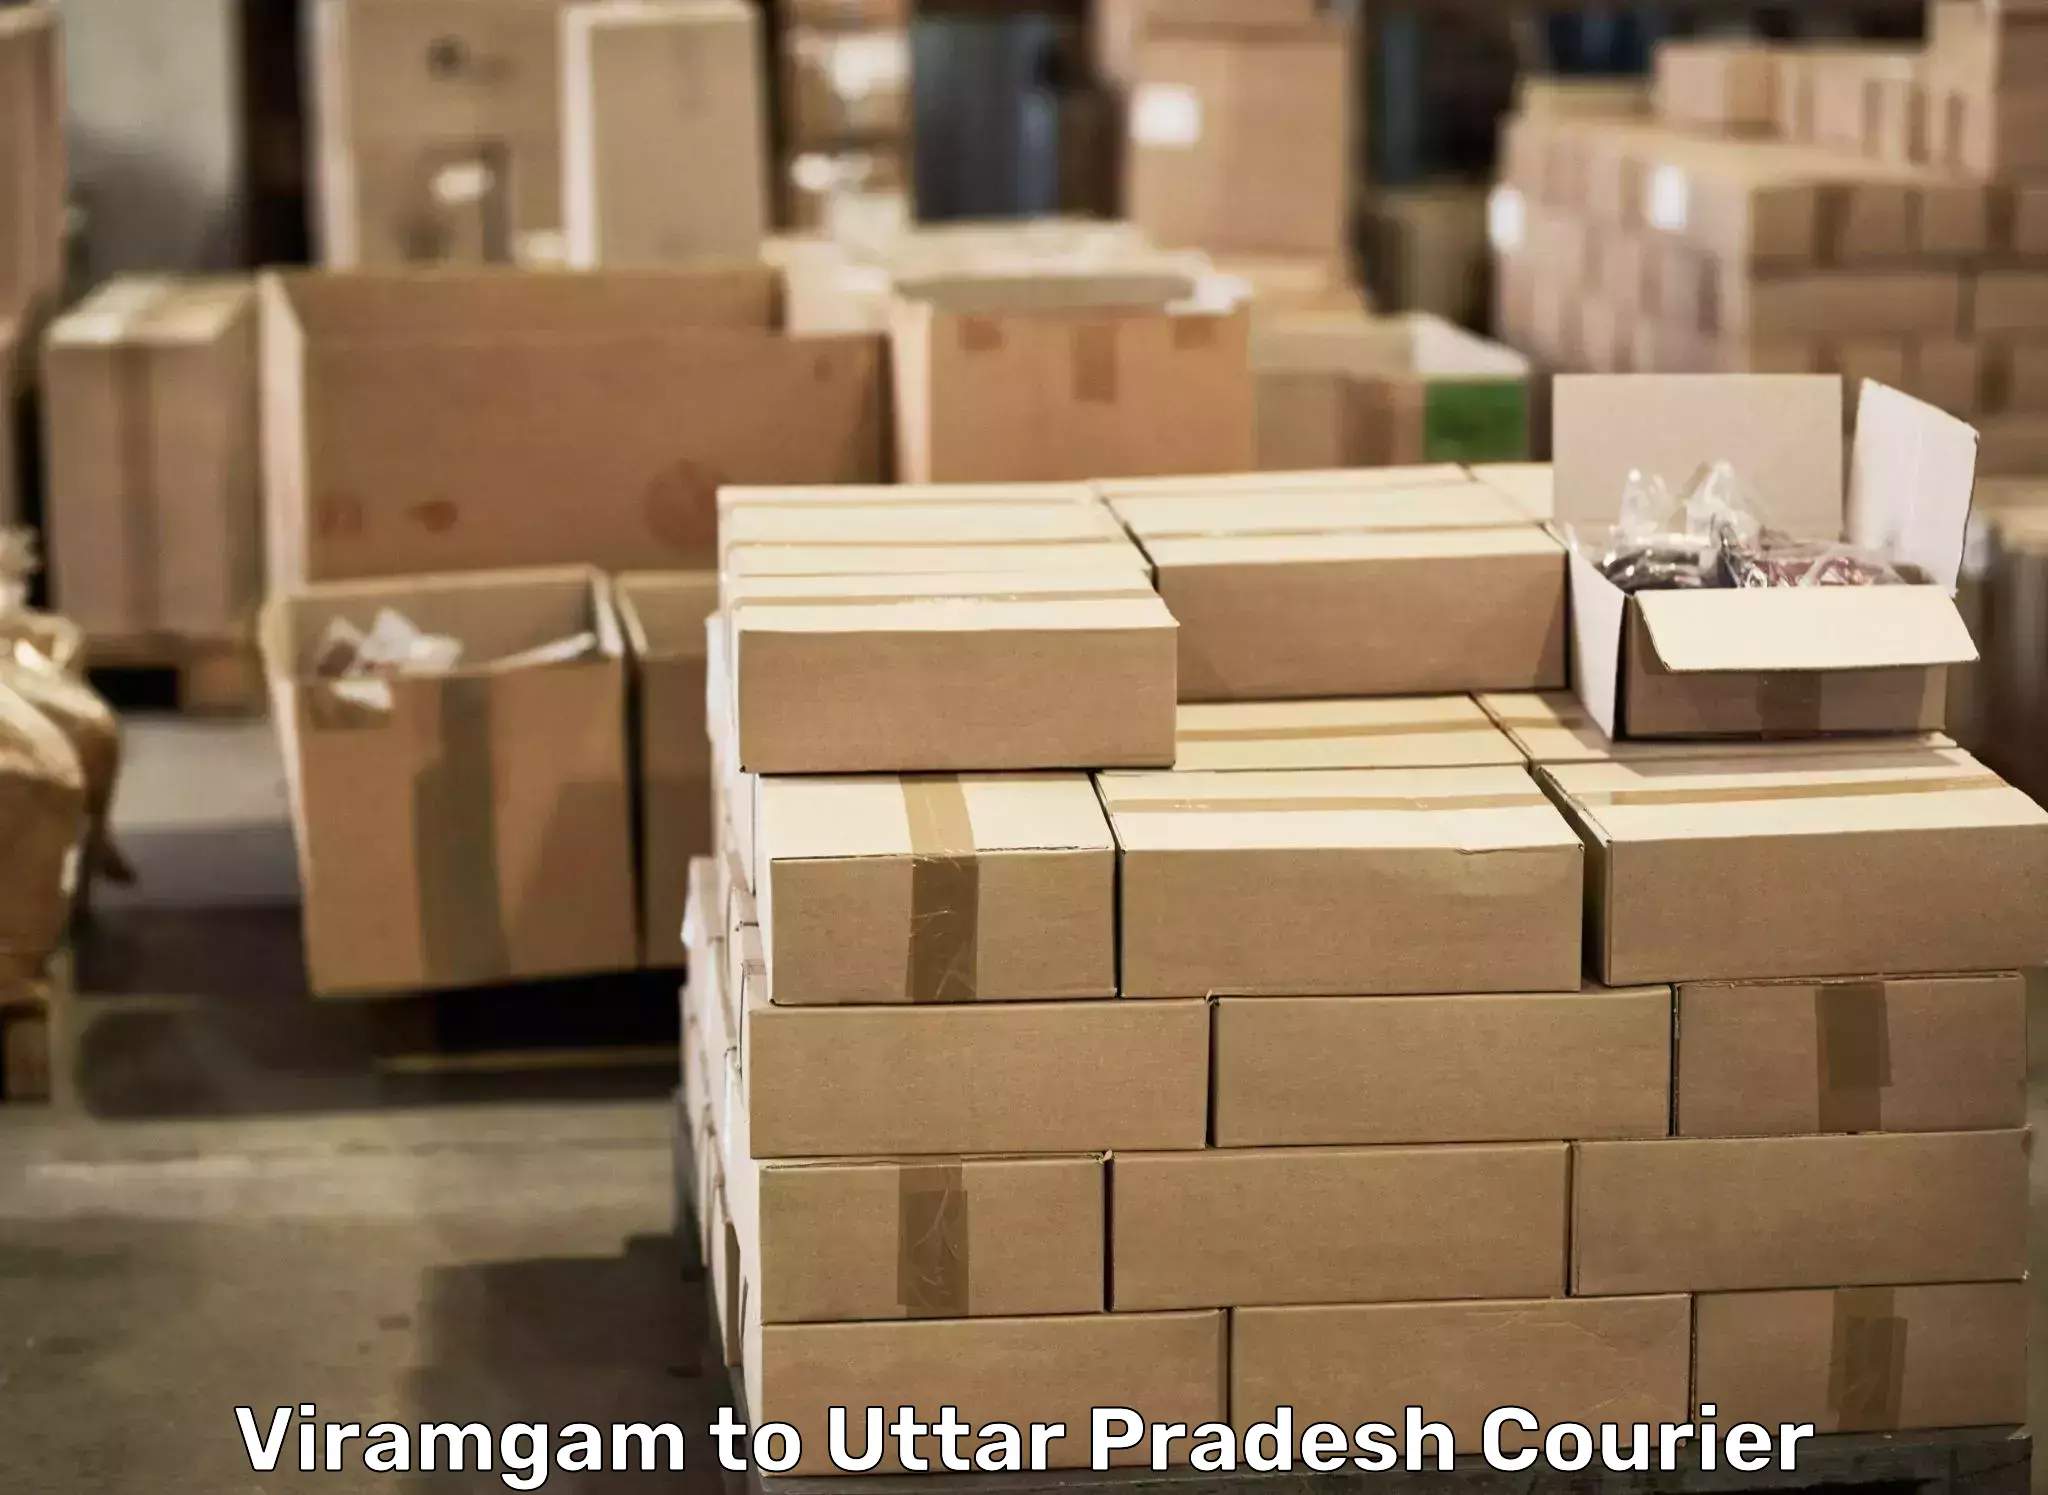 Quality moving services Viramgam to Baksha